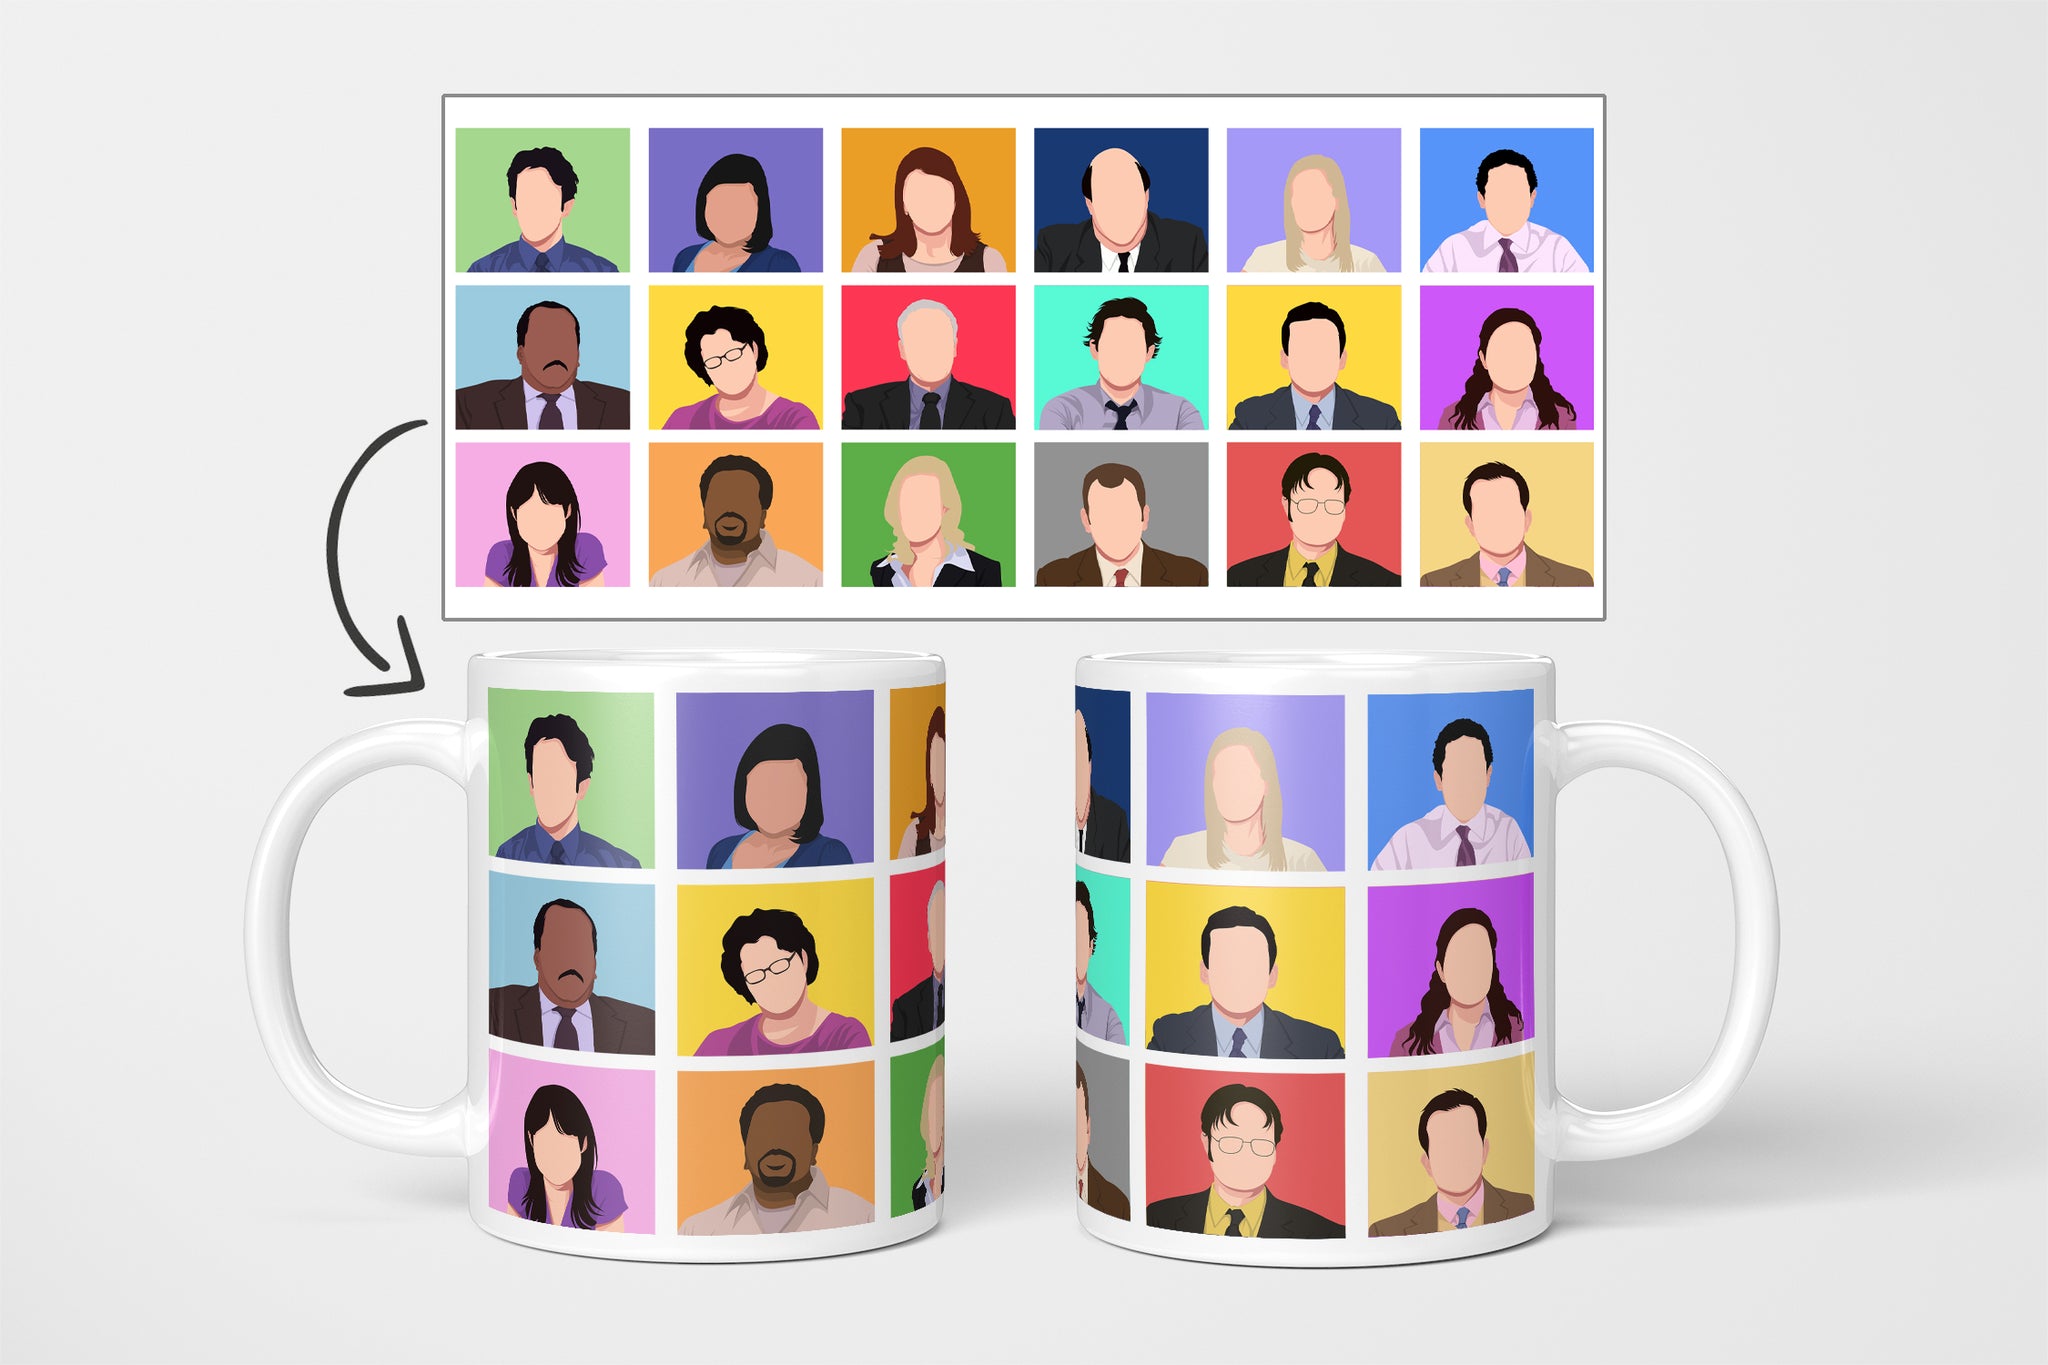 The Office US Cast Mug - Minimal Office Cast Mug